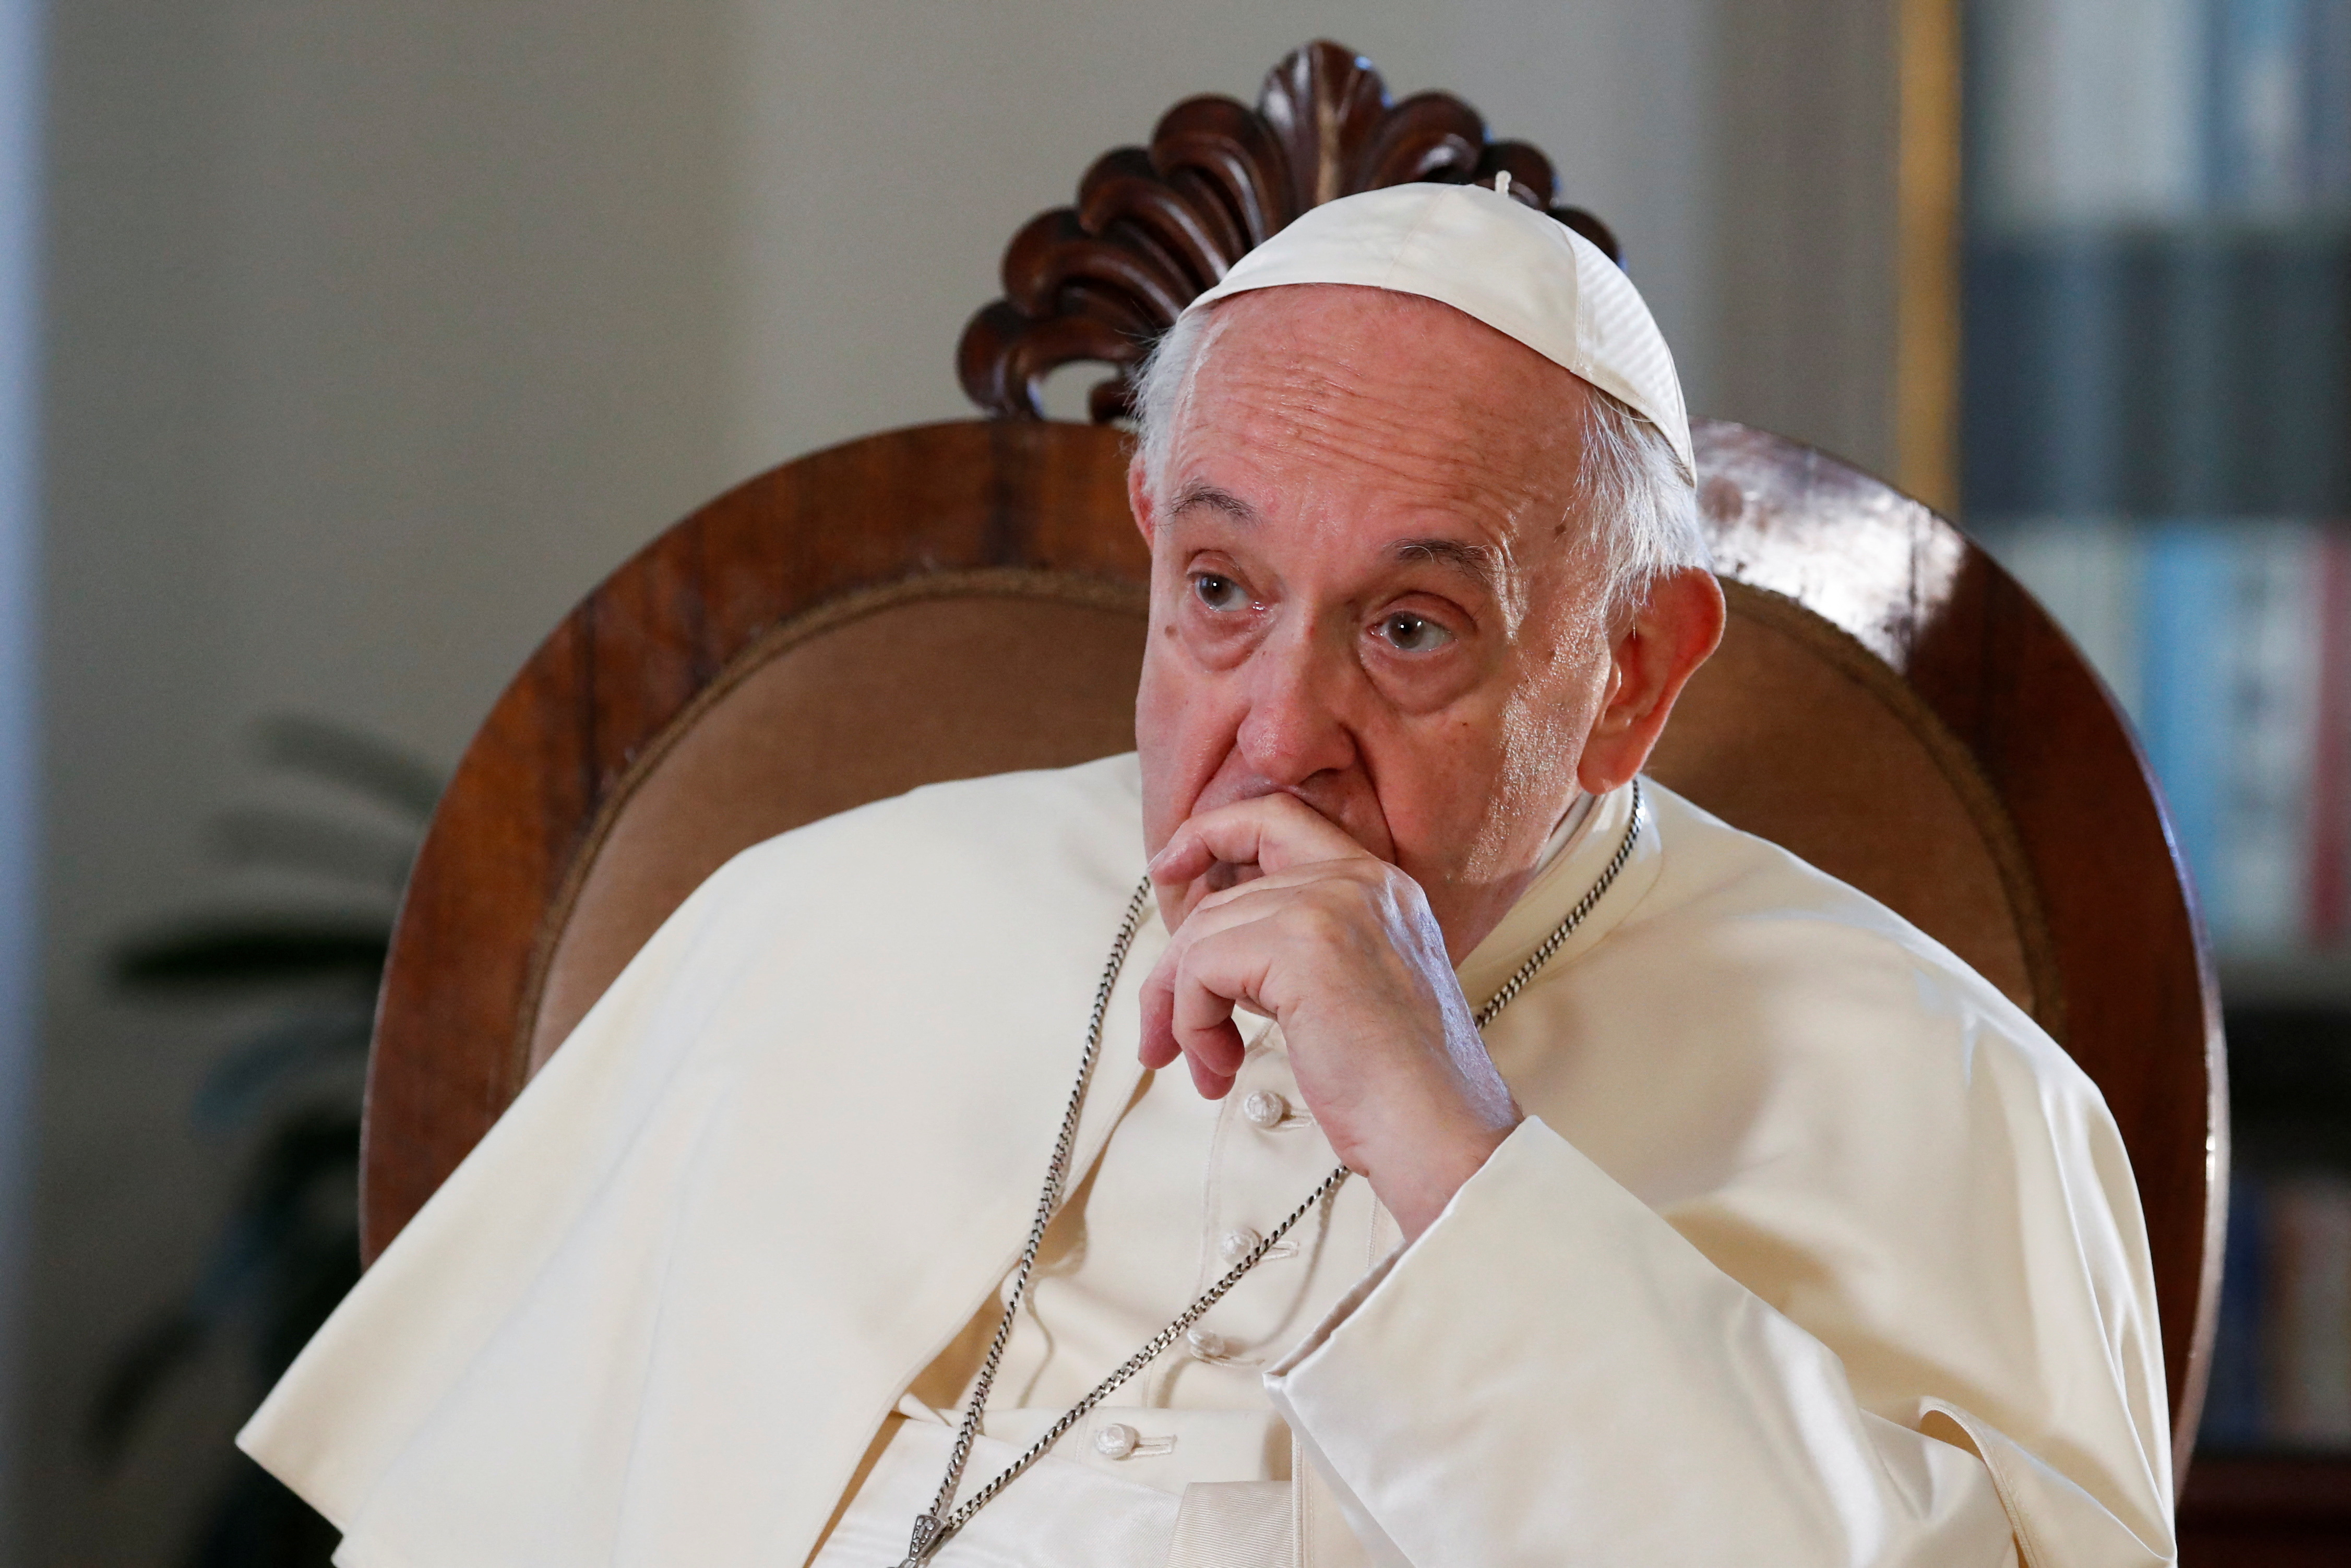 El papa condenó enérgicamente el aborto, comparándolo con “contratar a un asesino a sueldo” (REUTERS/Remo Casilli)